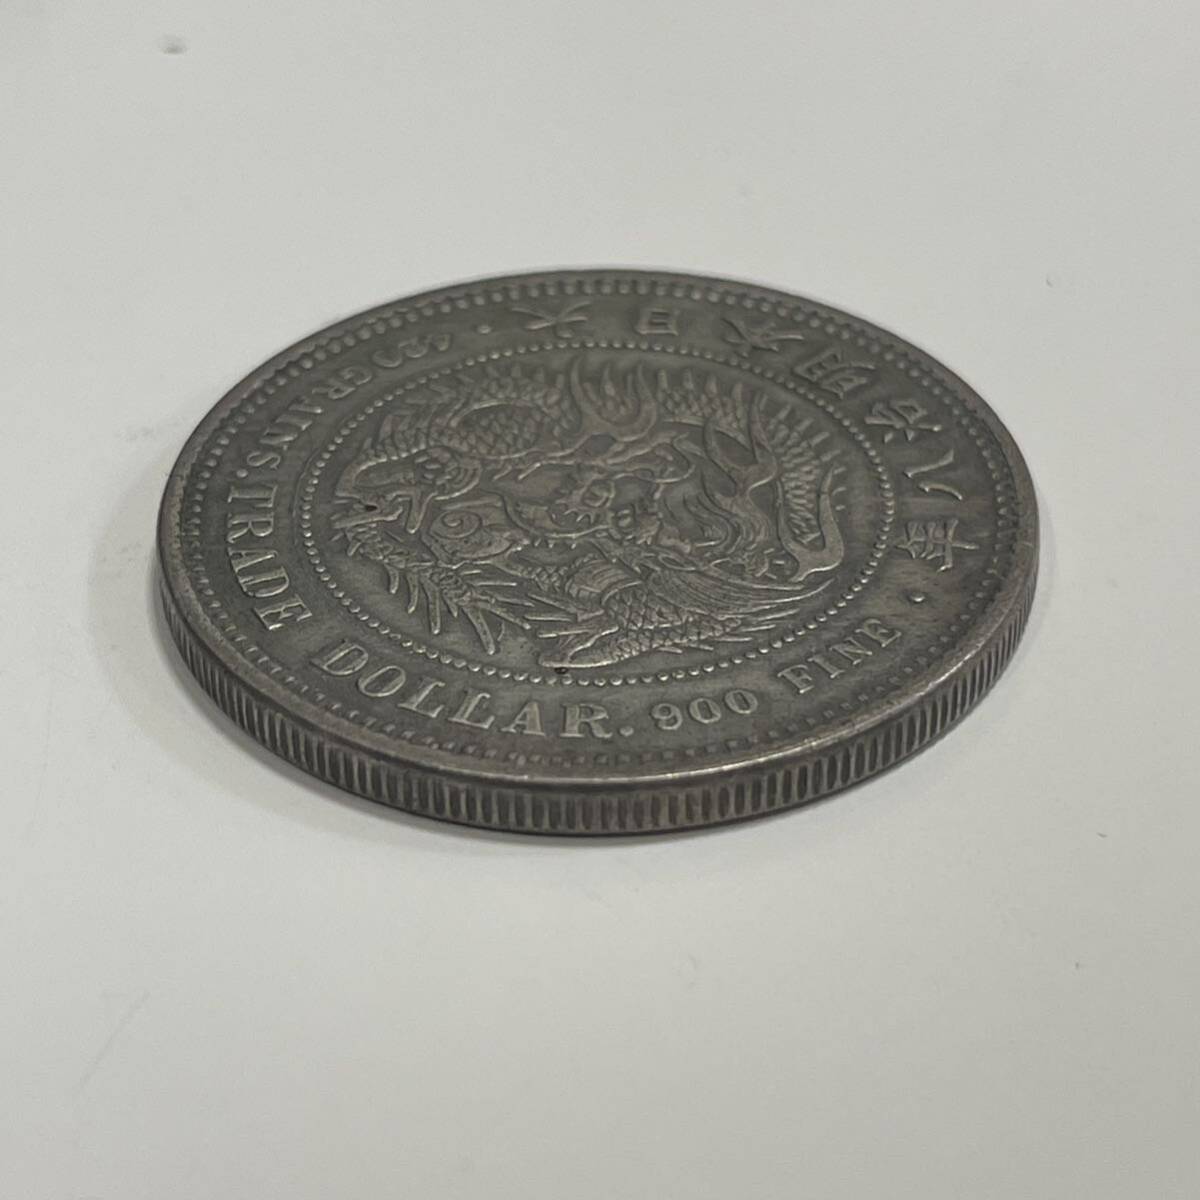 【...  серебро 】　1... серебряная монета    серебряная монета    монета     серебристый  1...  деньги (монета)  1  йен  серебряная монета    большой  Япония  период Мейдзи 8 год 　 большой  Япония  период Мейдзи 8 год 